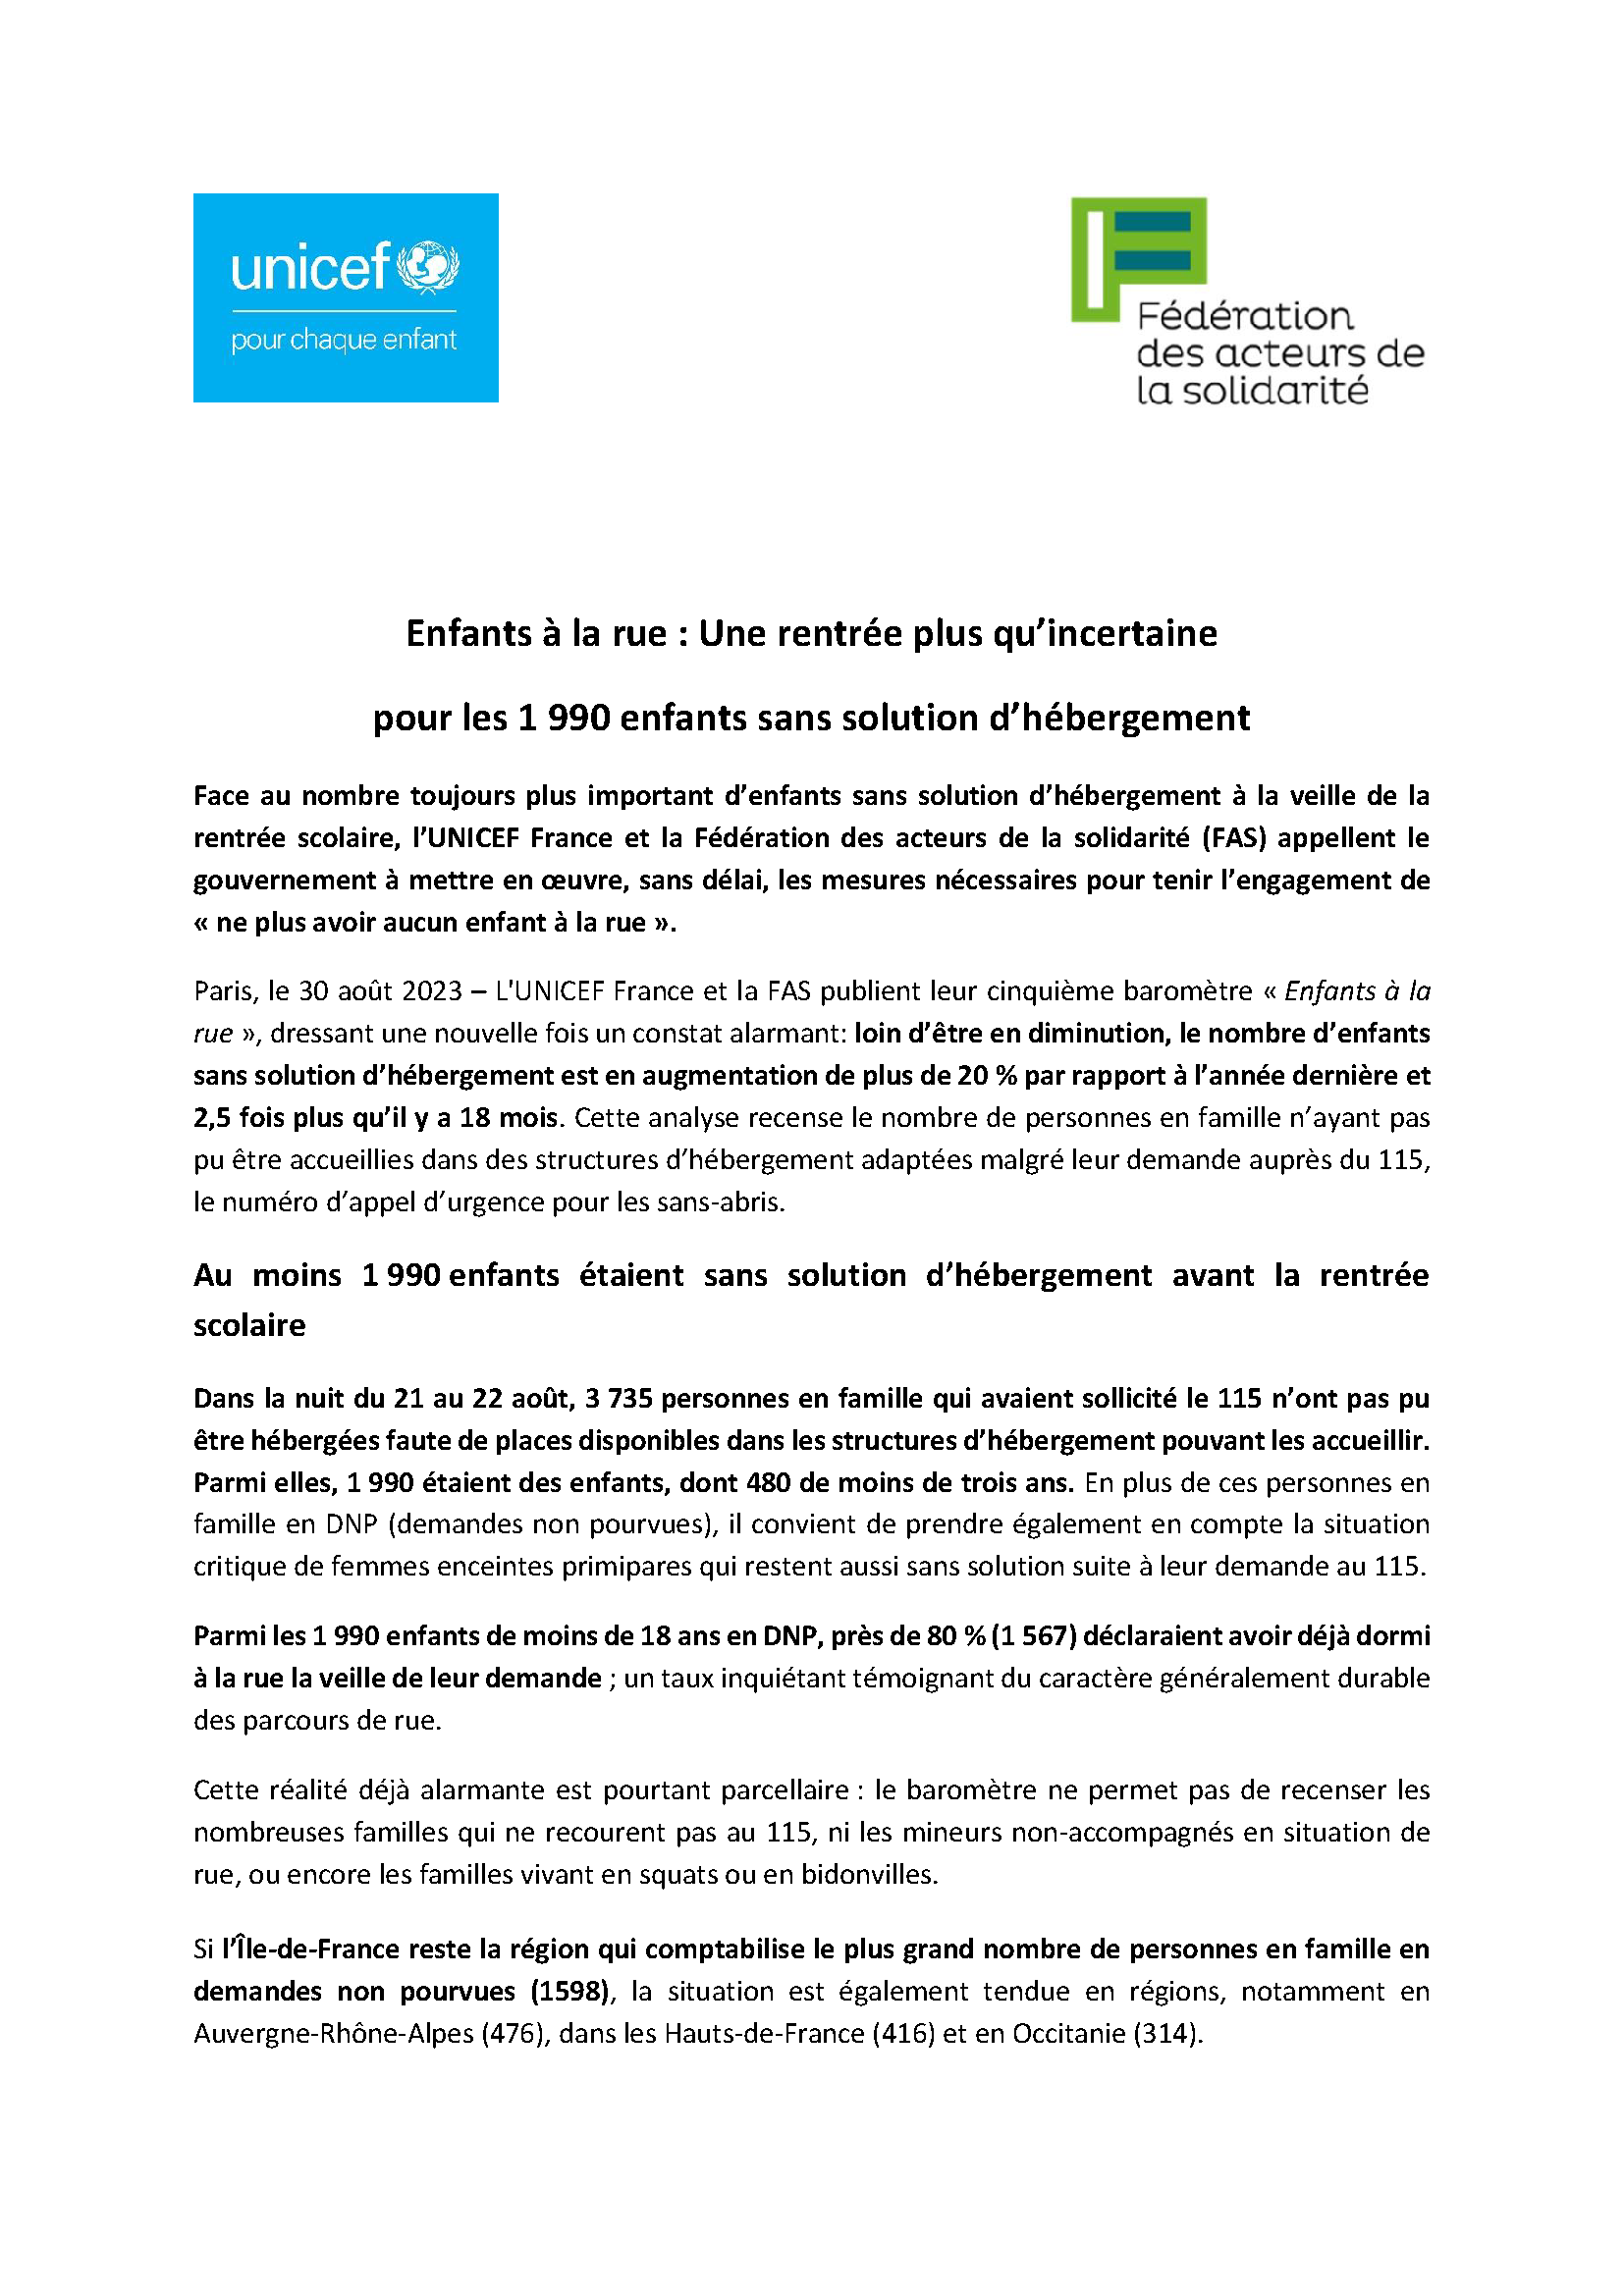 Unicef / FAS - Communiqué de presse - 5ème Baromètre des Enfants à la Rue (Edition 2023 - format pdf)